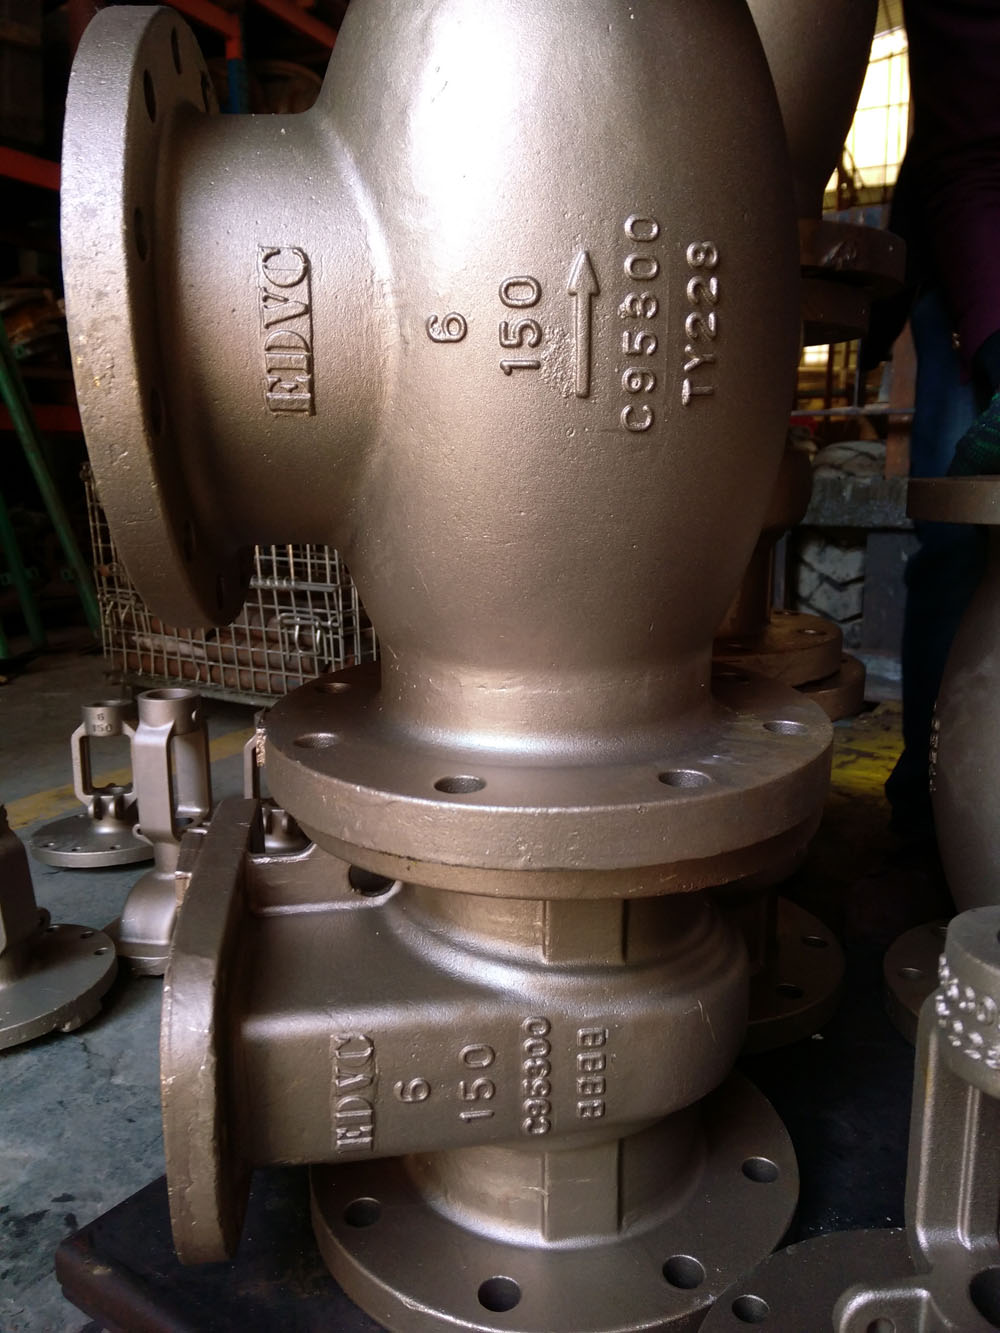 EDVC de la válvula de bronce de aluminio tomó la delantera en el éxito del proyecto en alta mar para los fabricantes chinos de válvulas